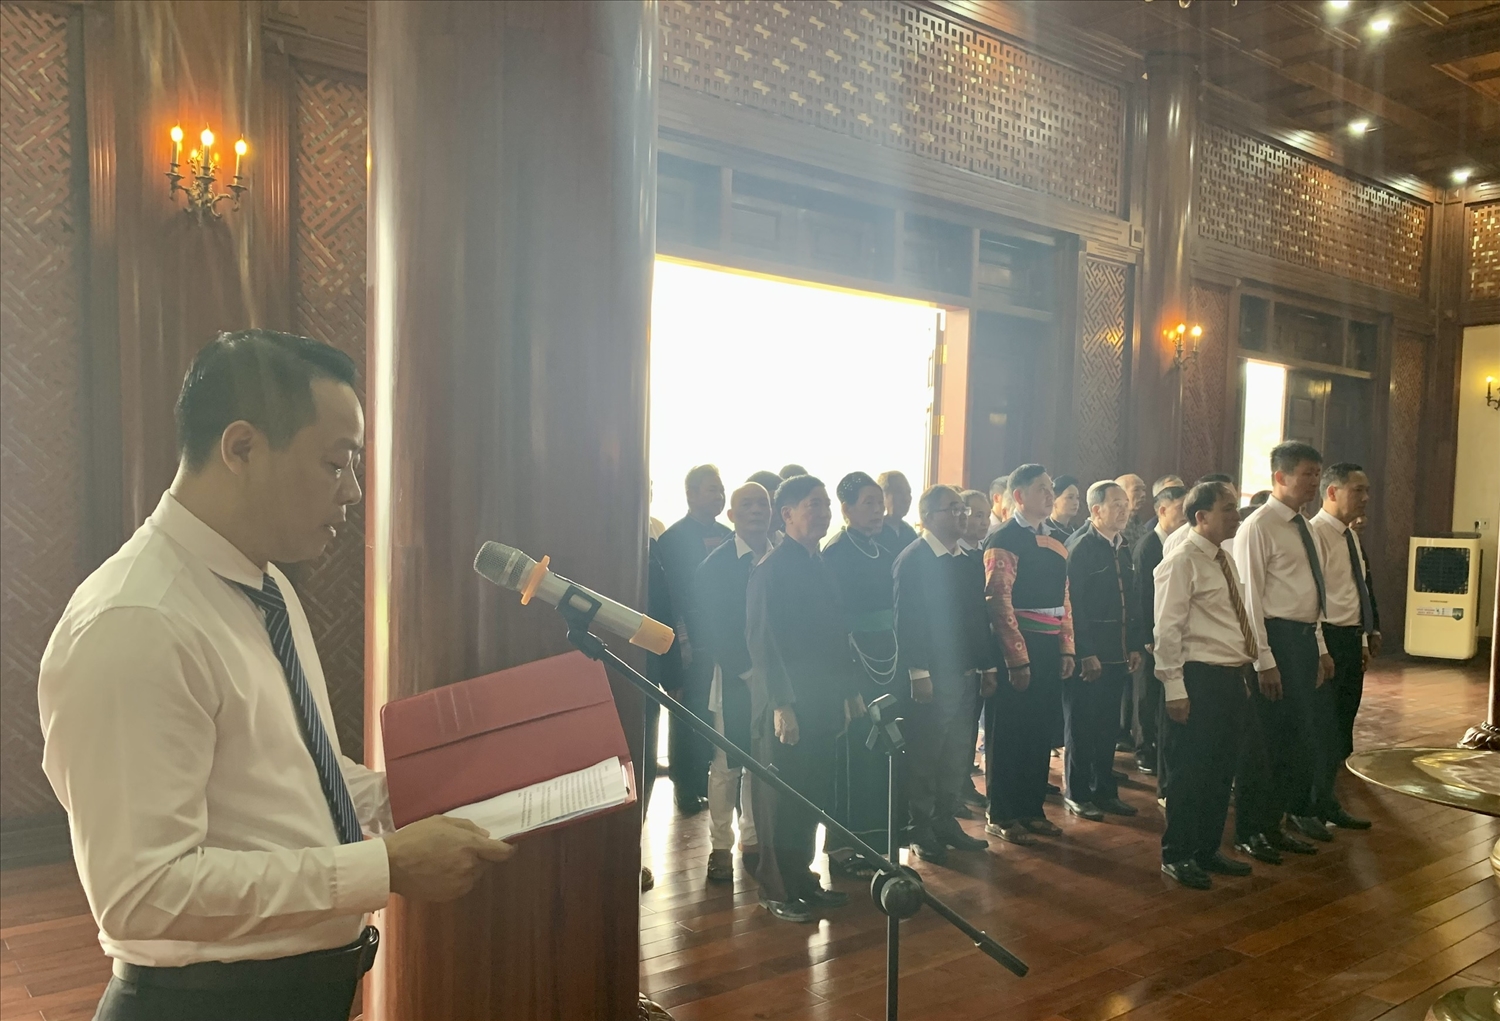 Thay mặt đoàn, đồng chí Đỗ Quang Vịnh, Phó trưởng Ban Dân tộc tỉnh lên báo công dâng Bác những thành tích đã đạt được trong năm 2023.